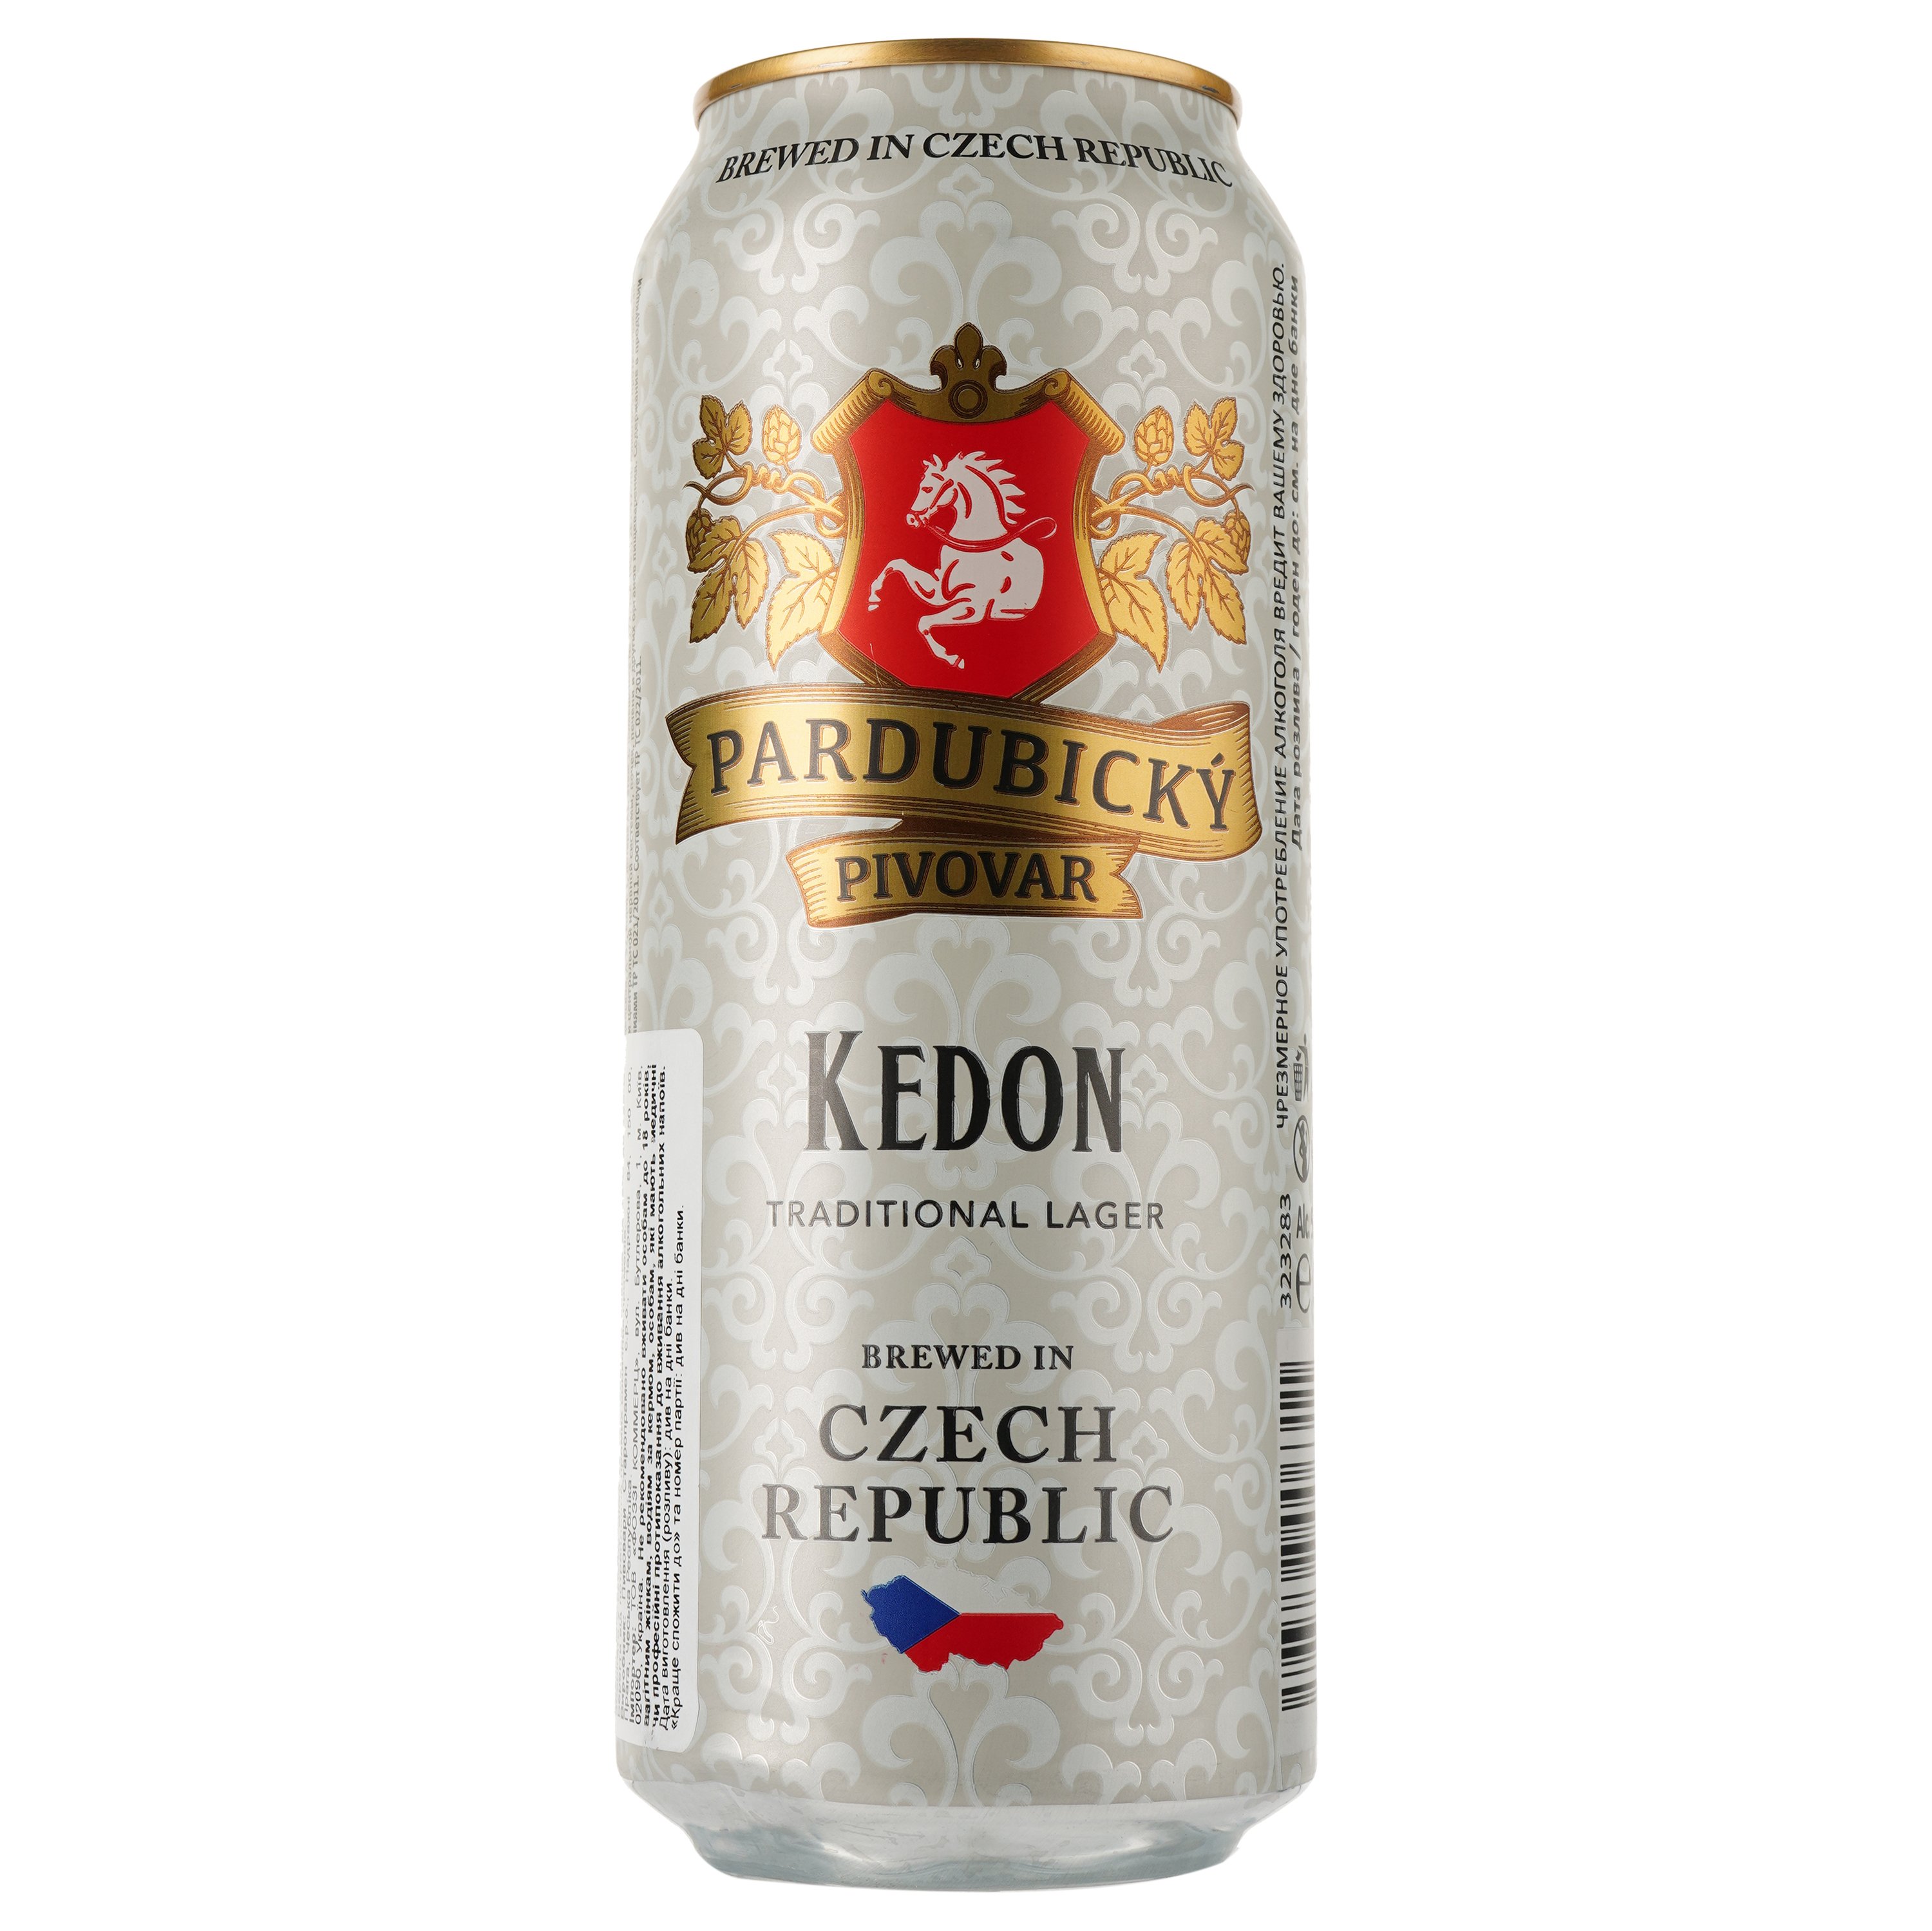 Пиво Pardubicky Pivovar Kedon, світле, фільтроване, 5%, з/б, 0,5 л (913409) - фото 1